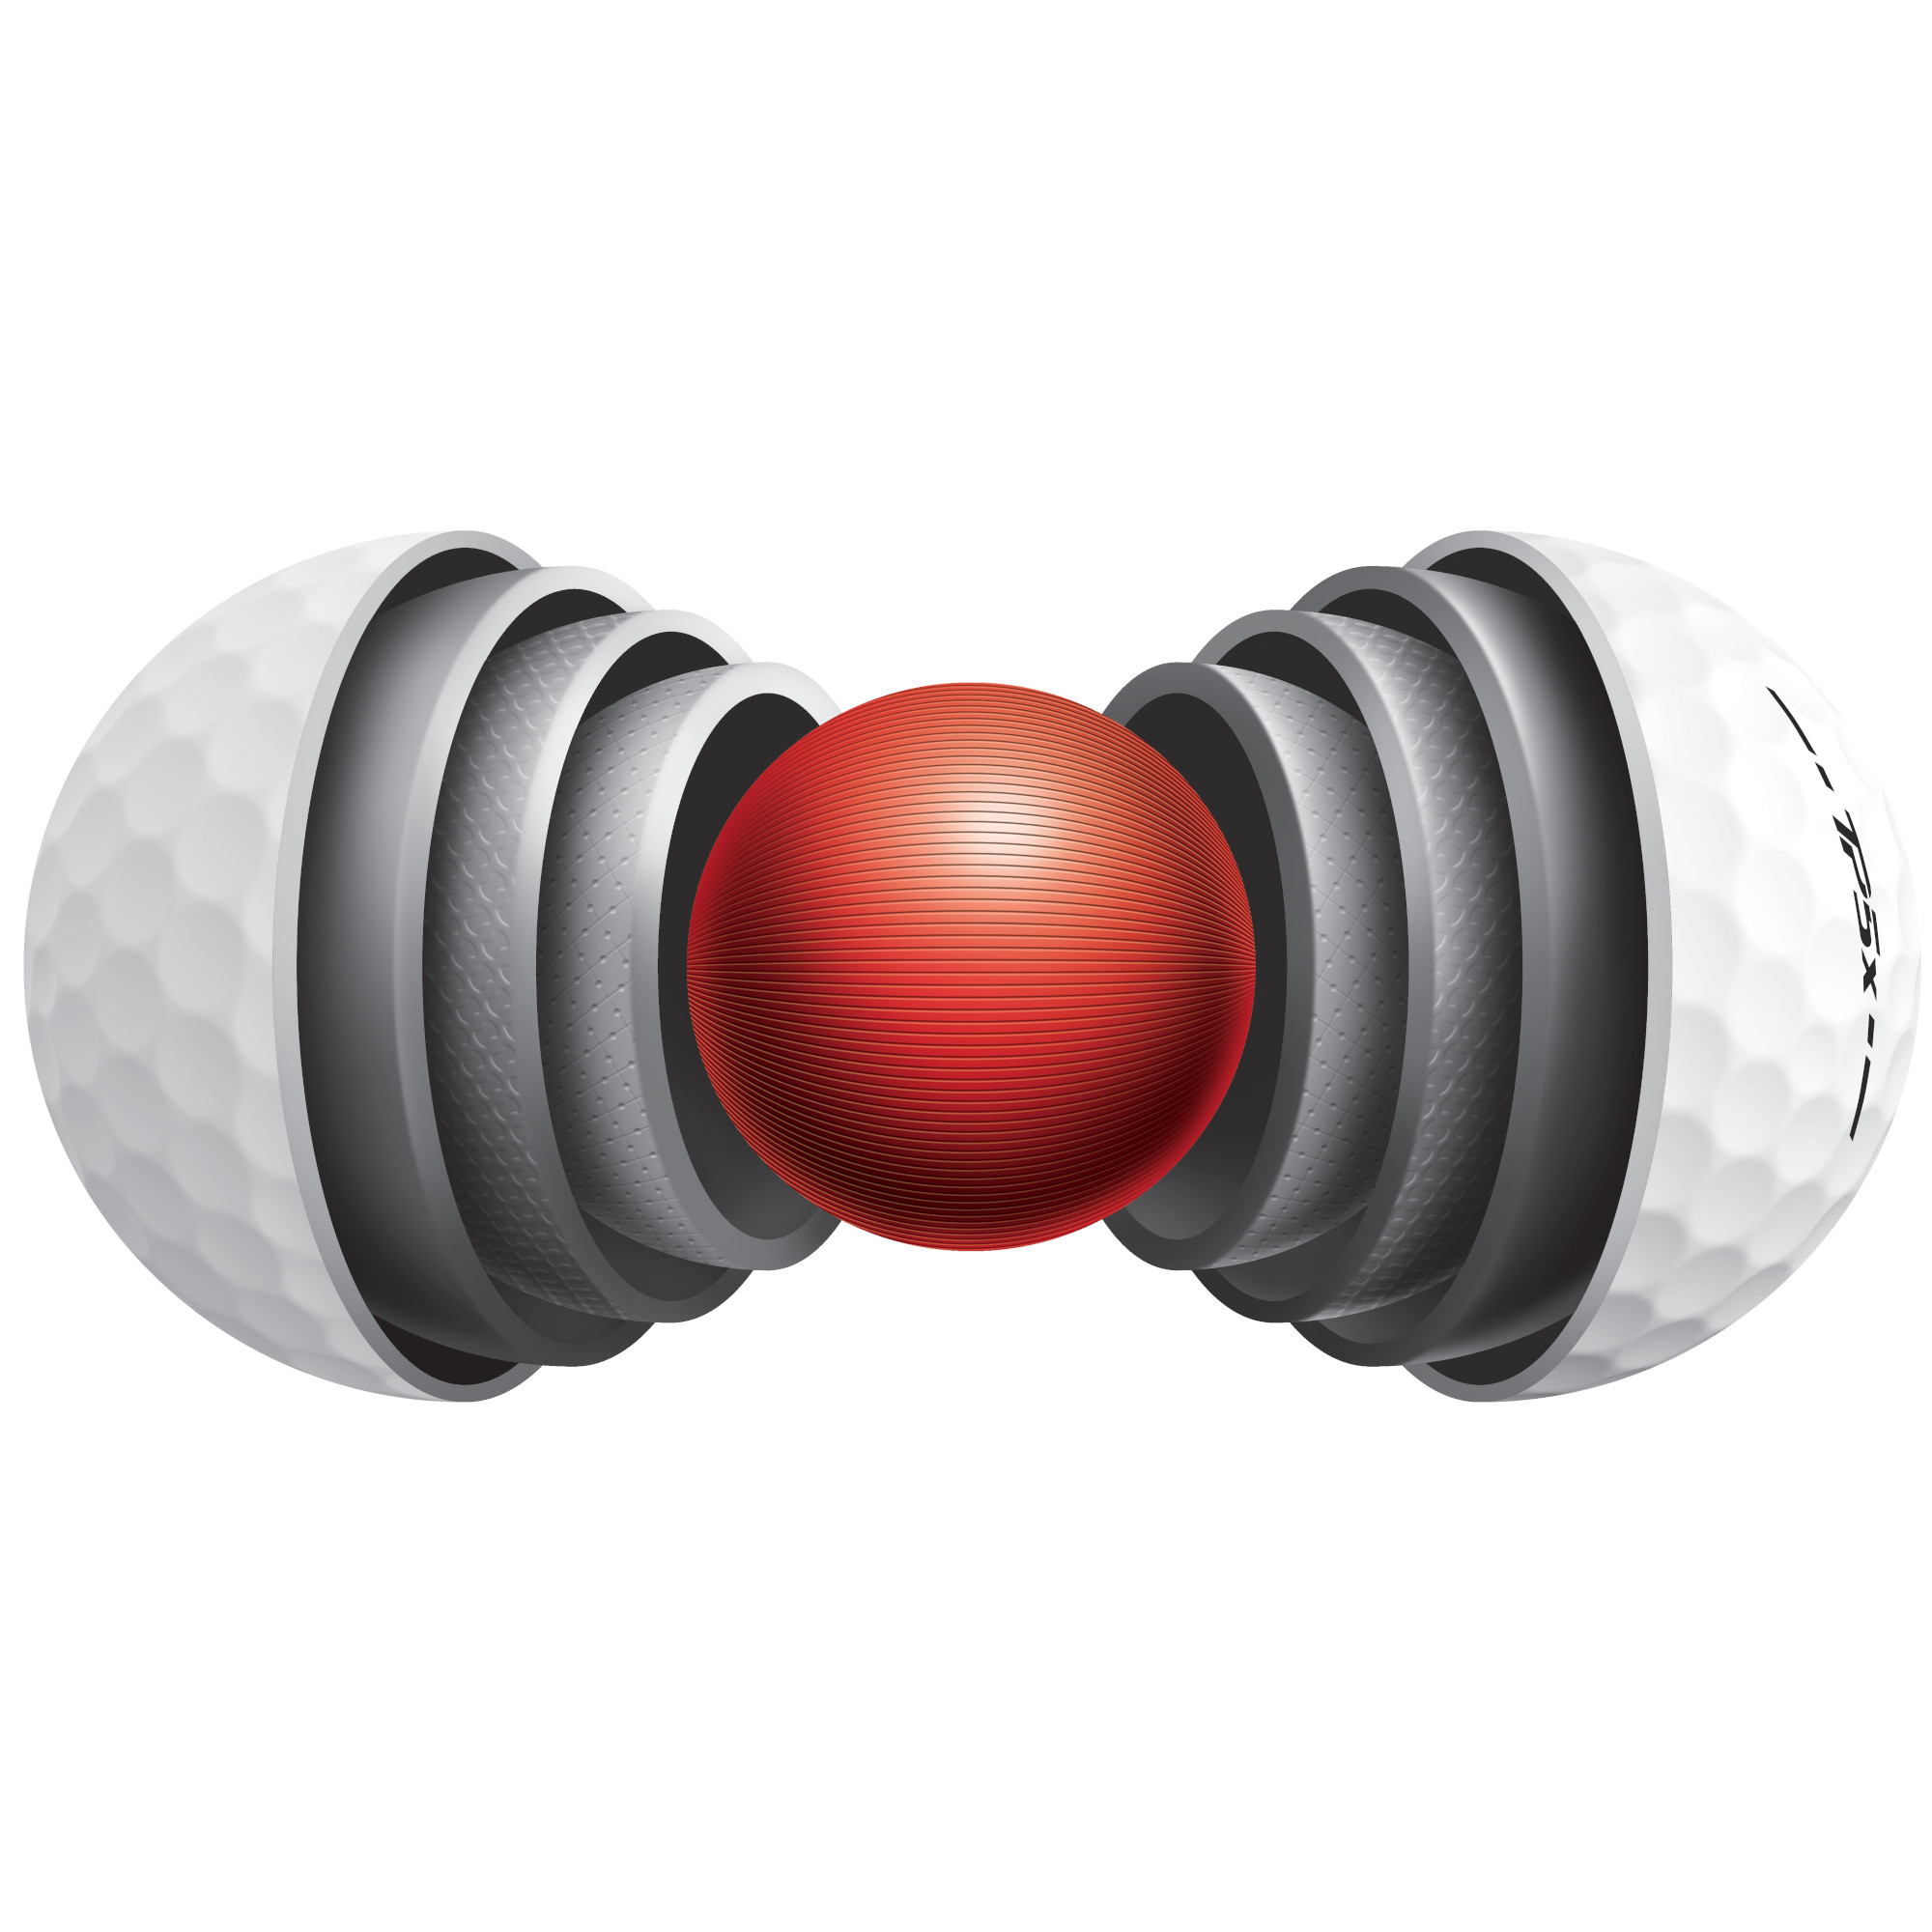 TaylorMade TP5x Golfbälle bedruckt, weiss (VPE à 12 Bälle)